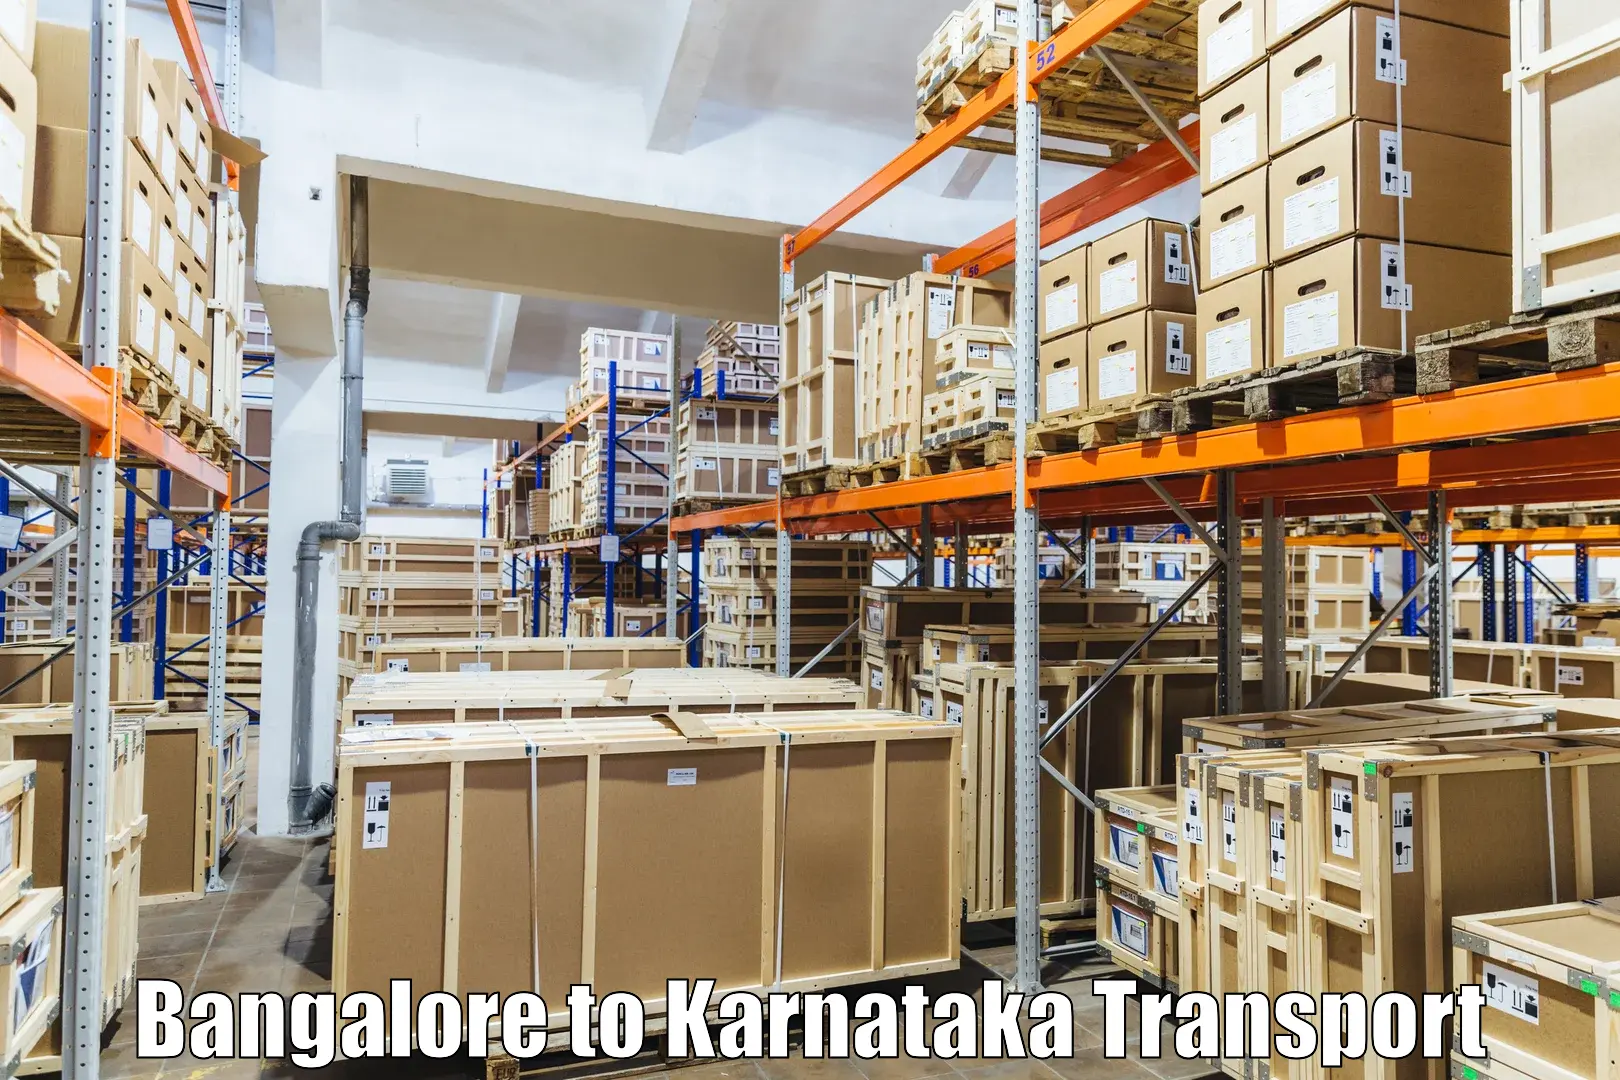 Express transport services in Bangalore to Kolar